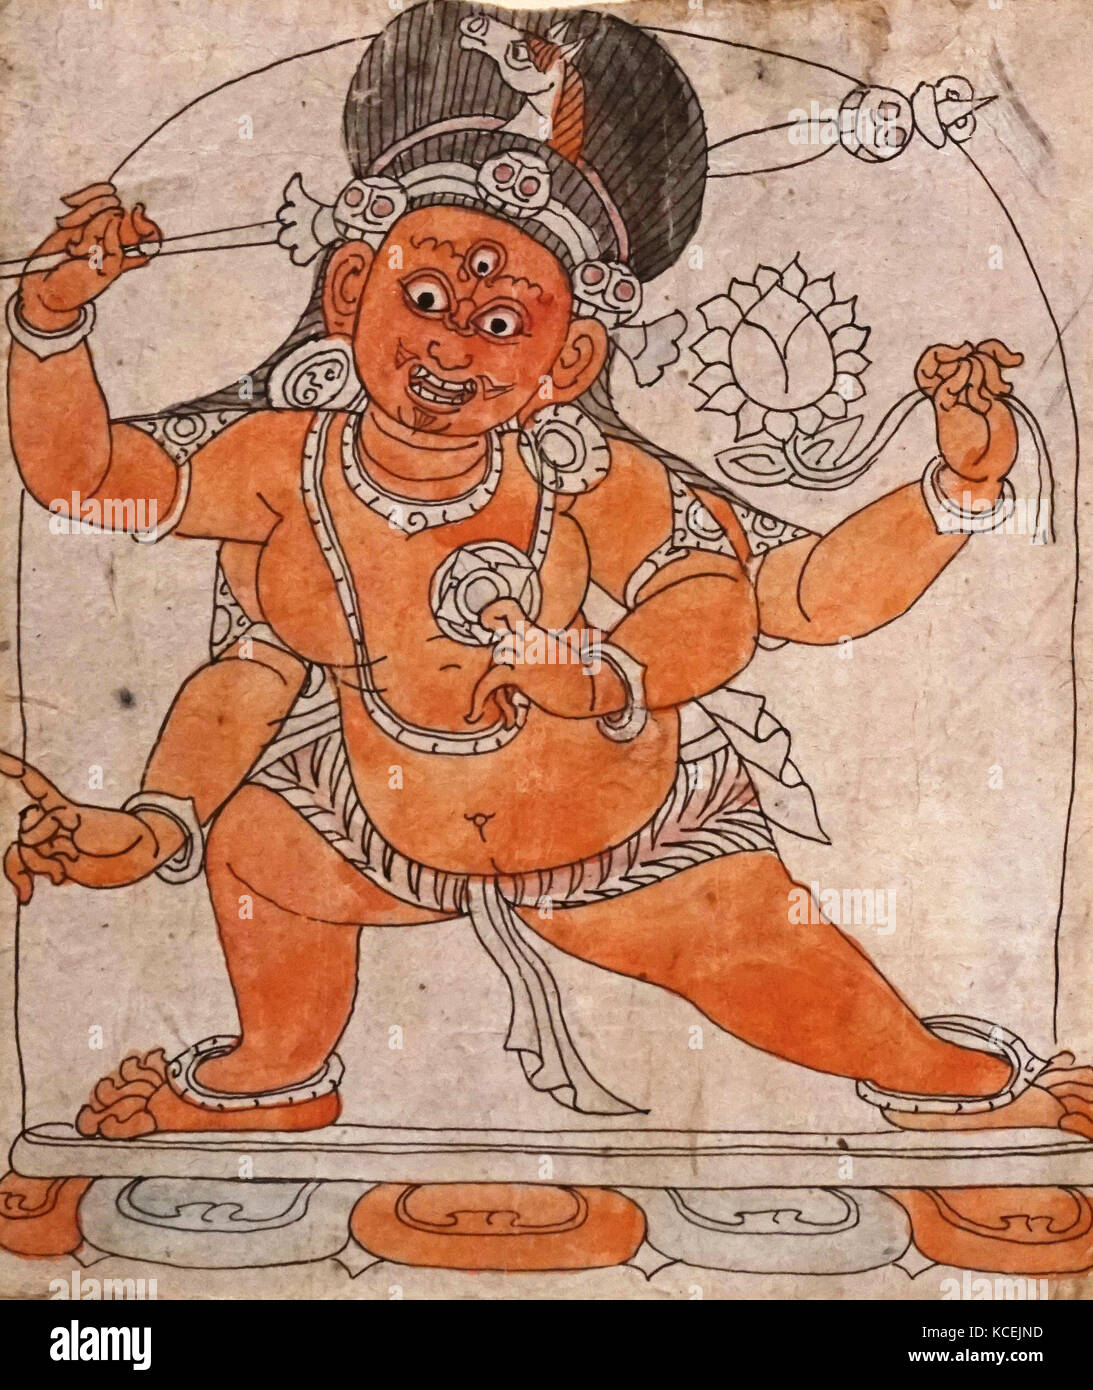 Weihe Zeichnung mit der Darstellung der Gautama Buddha, auch bekannt als Siddharta Gautama Shakyamuni Buddha, auf dessen Lehren Buddhismus gegründet wurde., 1450-1600 AD. in einer nepalesischen Stil gezeichnet. Papier, Tinte und Wasserfarben Tibet Stockfoto